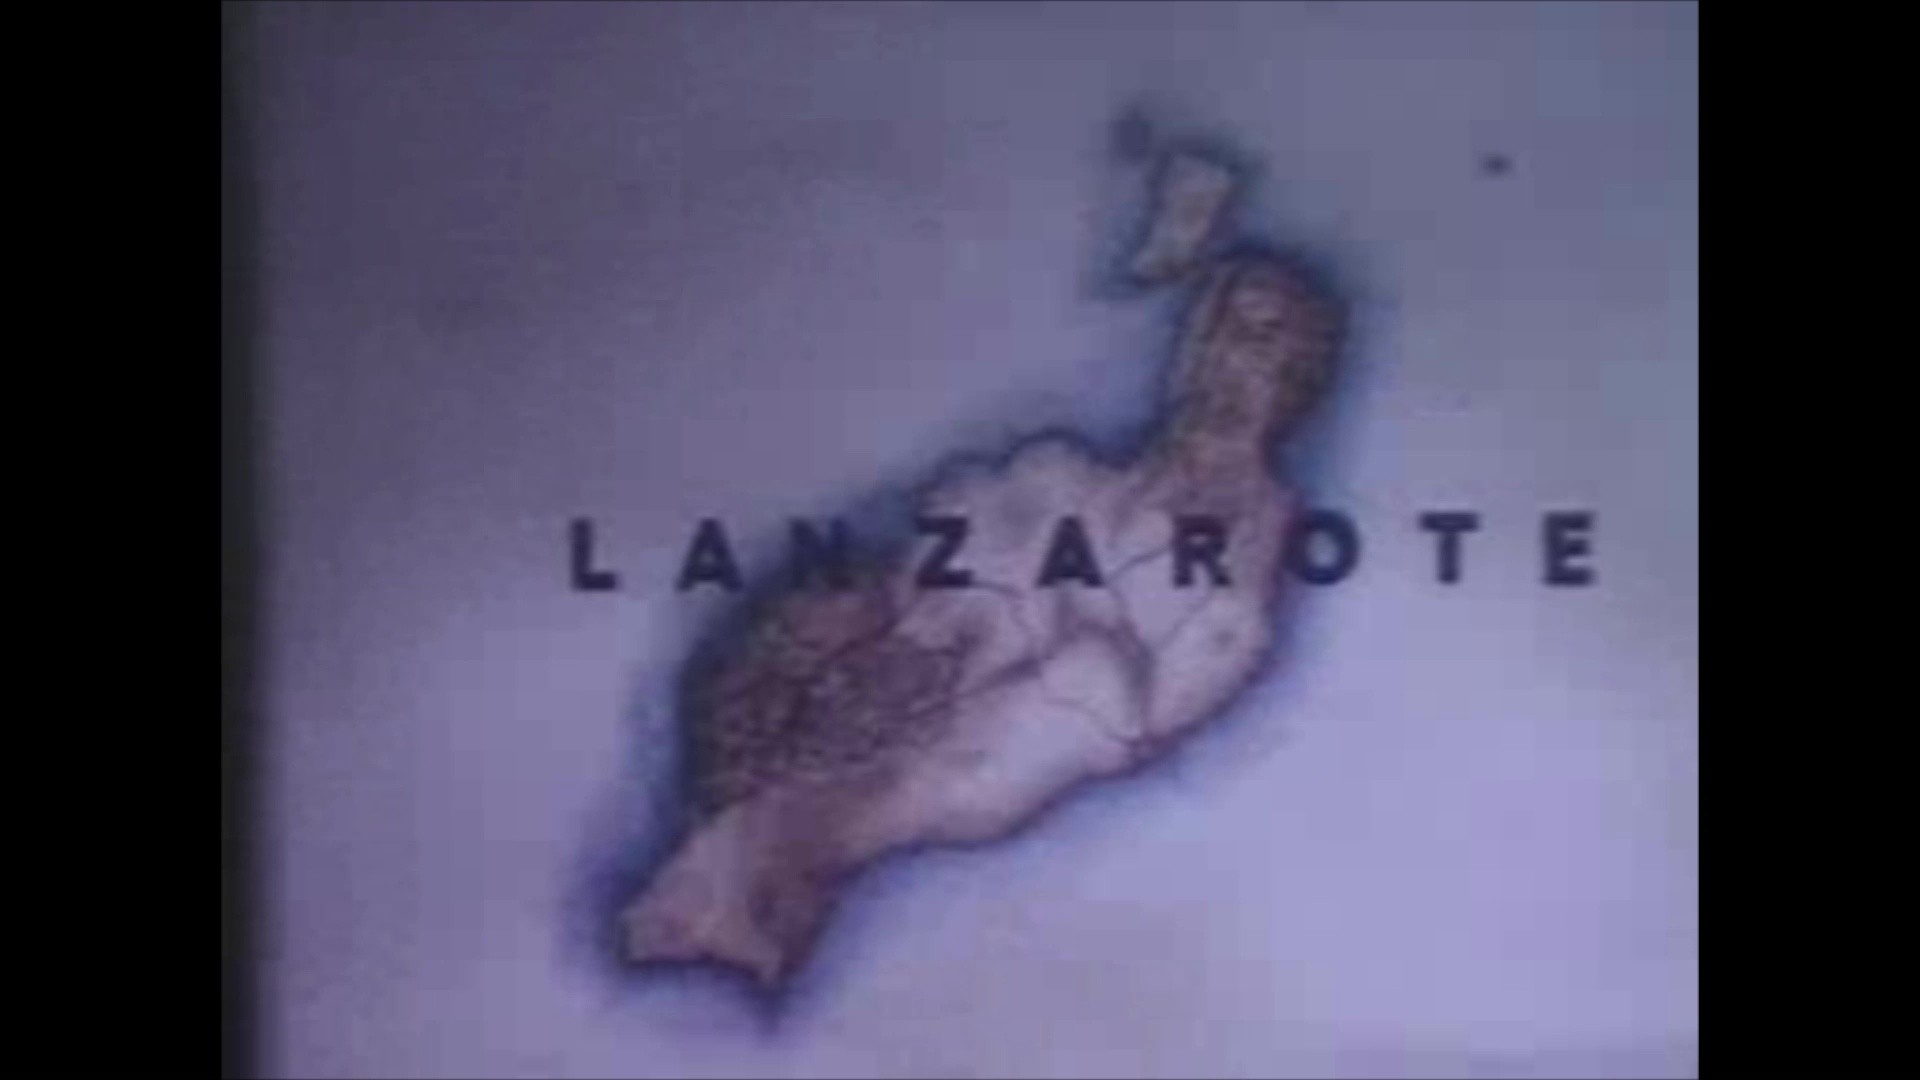 Fragmentos de un documental sobre Lanzarote (1968)